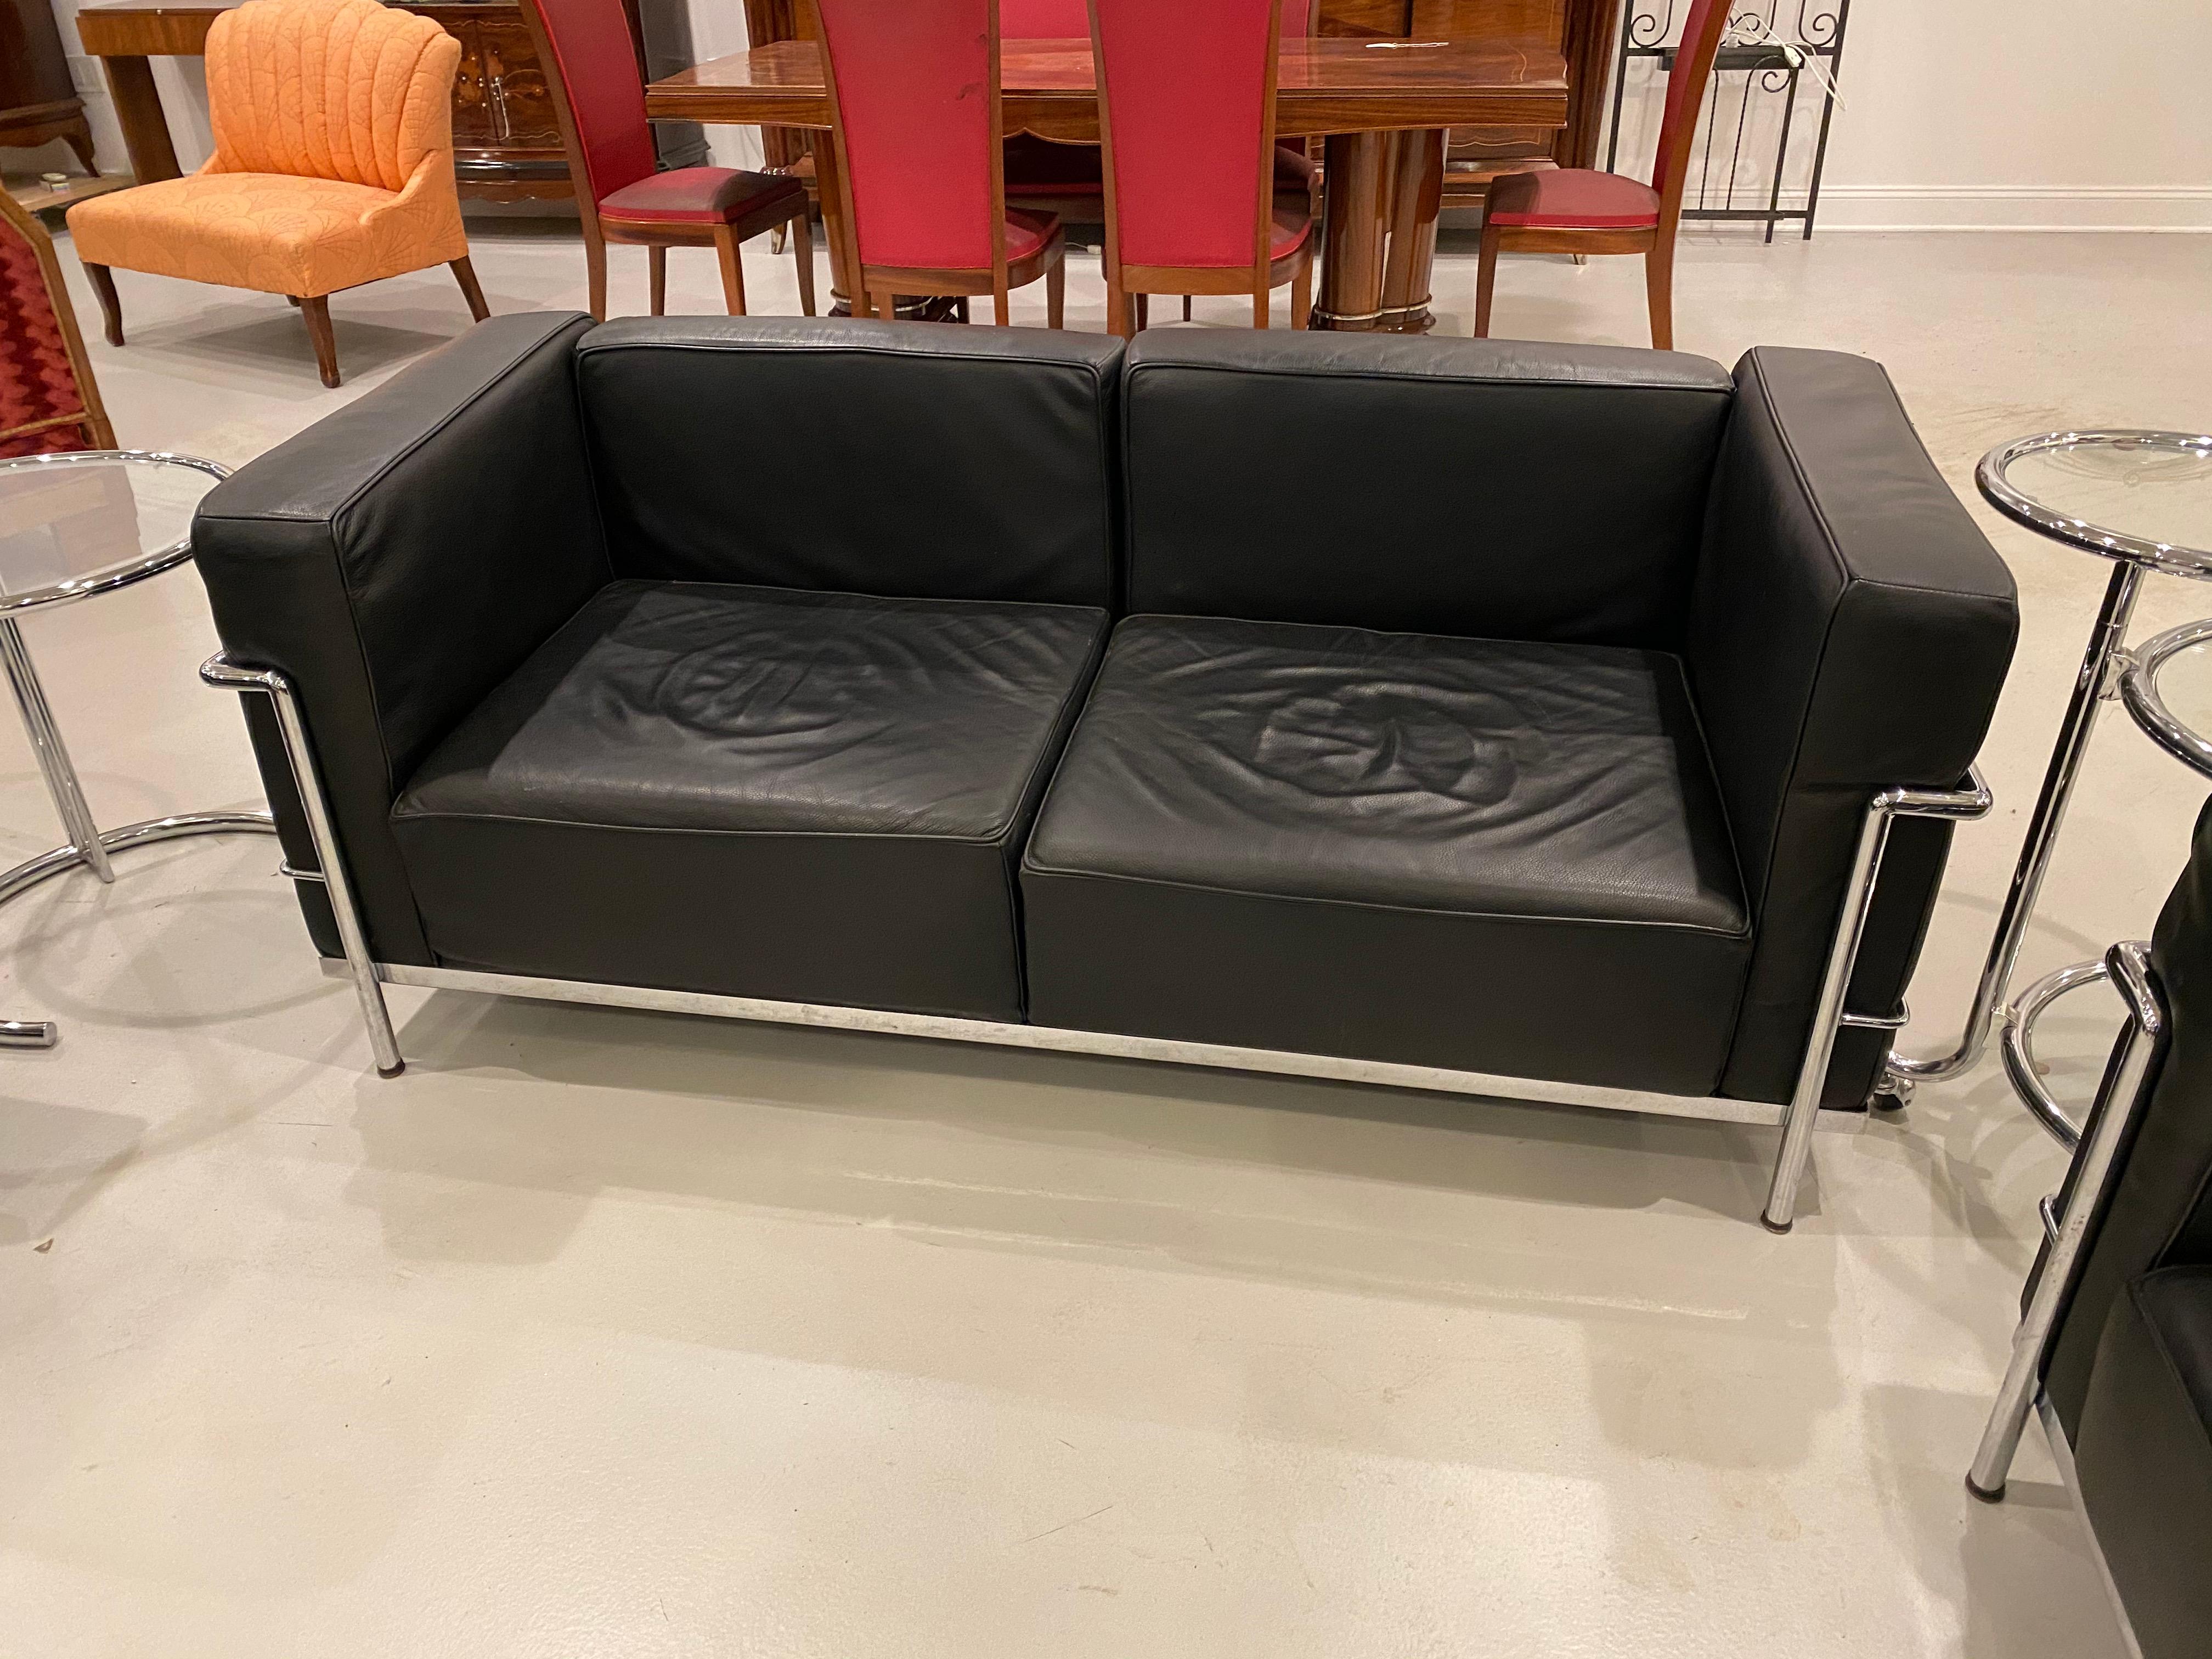 Magnifique et élégant canapé en chrome et cuir noir dans le style de Le Corbusier.